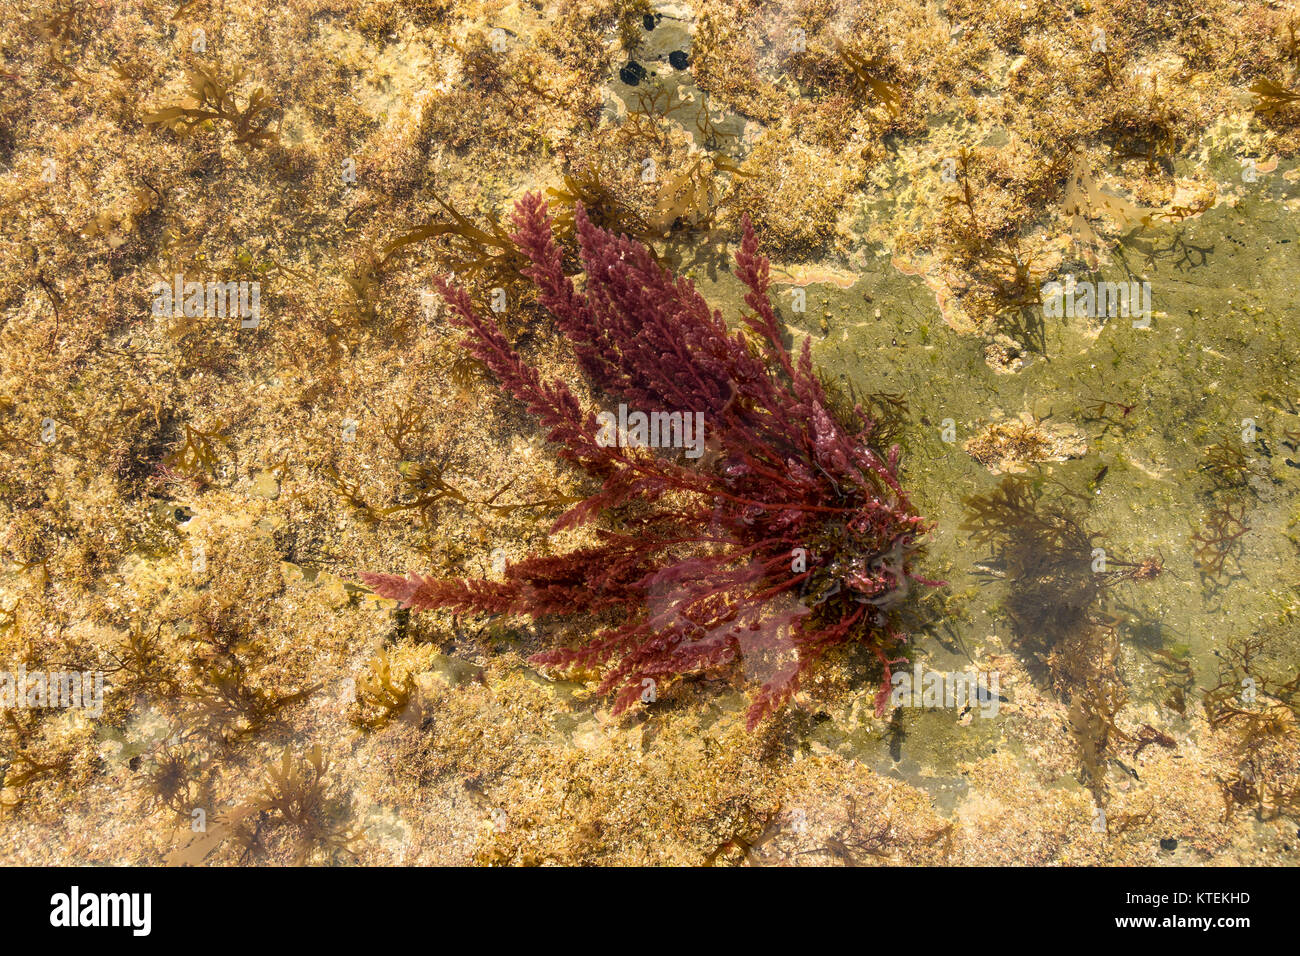 Mediterráneo, alga roja Asparagopsis taxiformis.El sur de España. Foto de stock